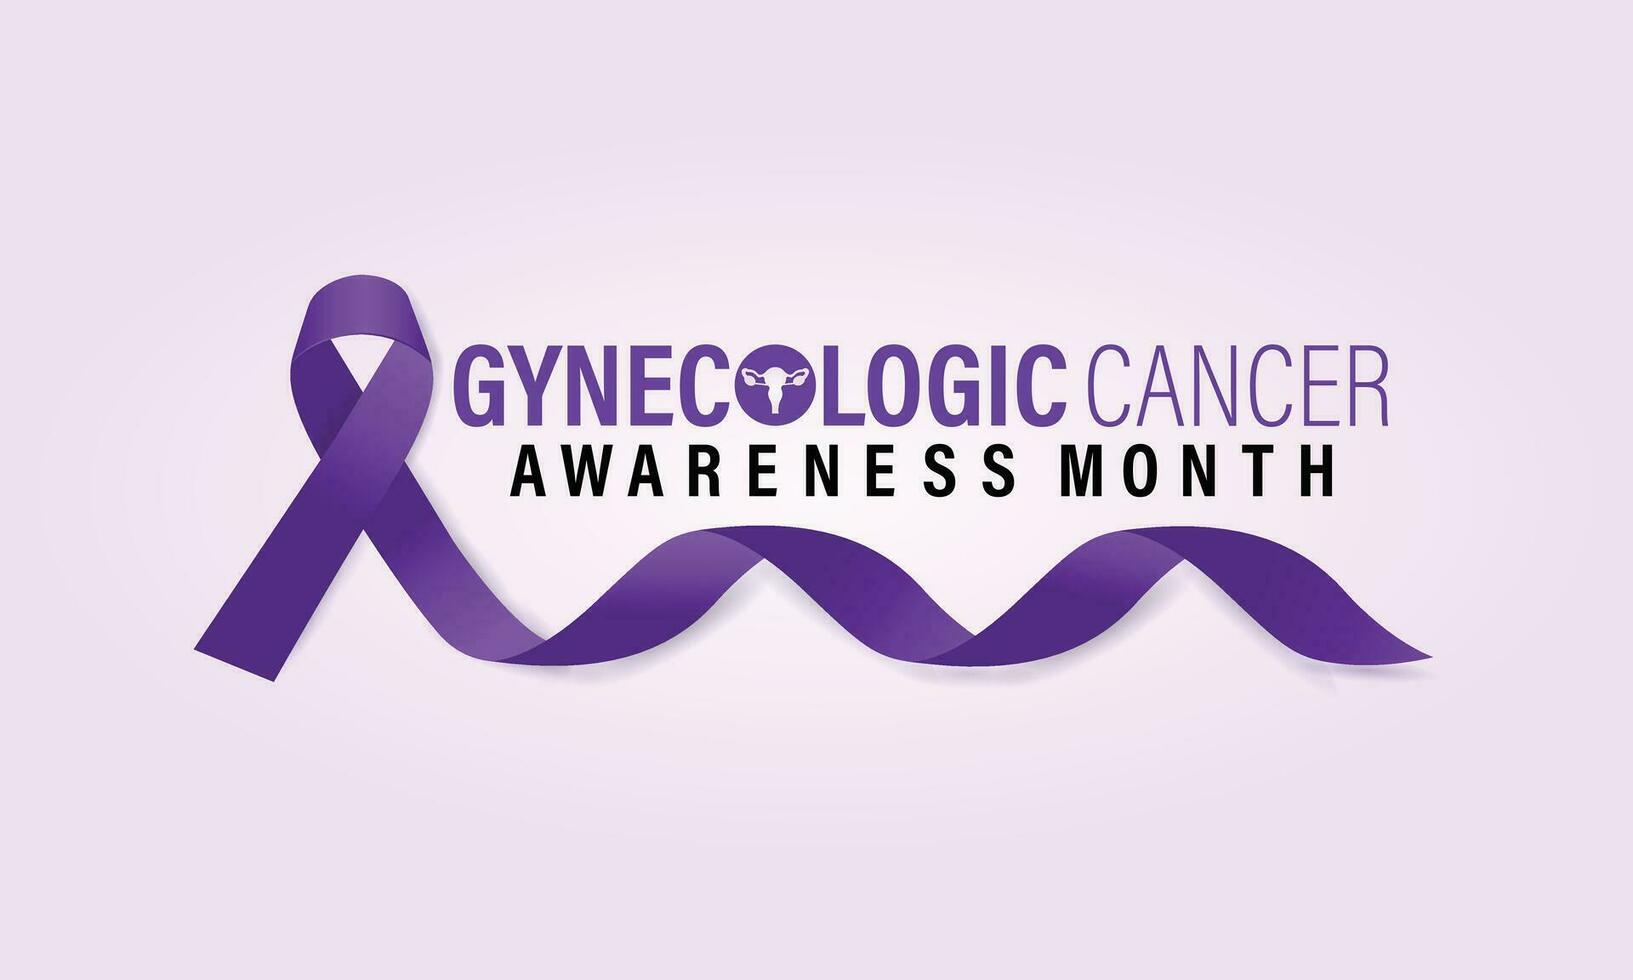 Vektor Illustration auf das Thema von gynäkologisch Krebs Bewusstsein Monat Banner, Urlaub, Poster, Karte und Hintergrund Design.